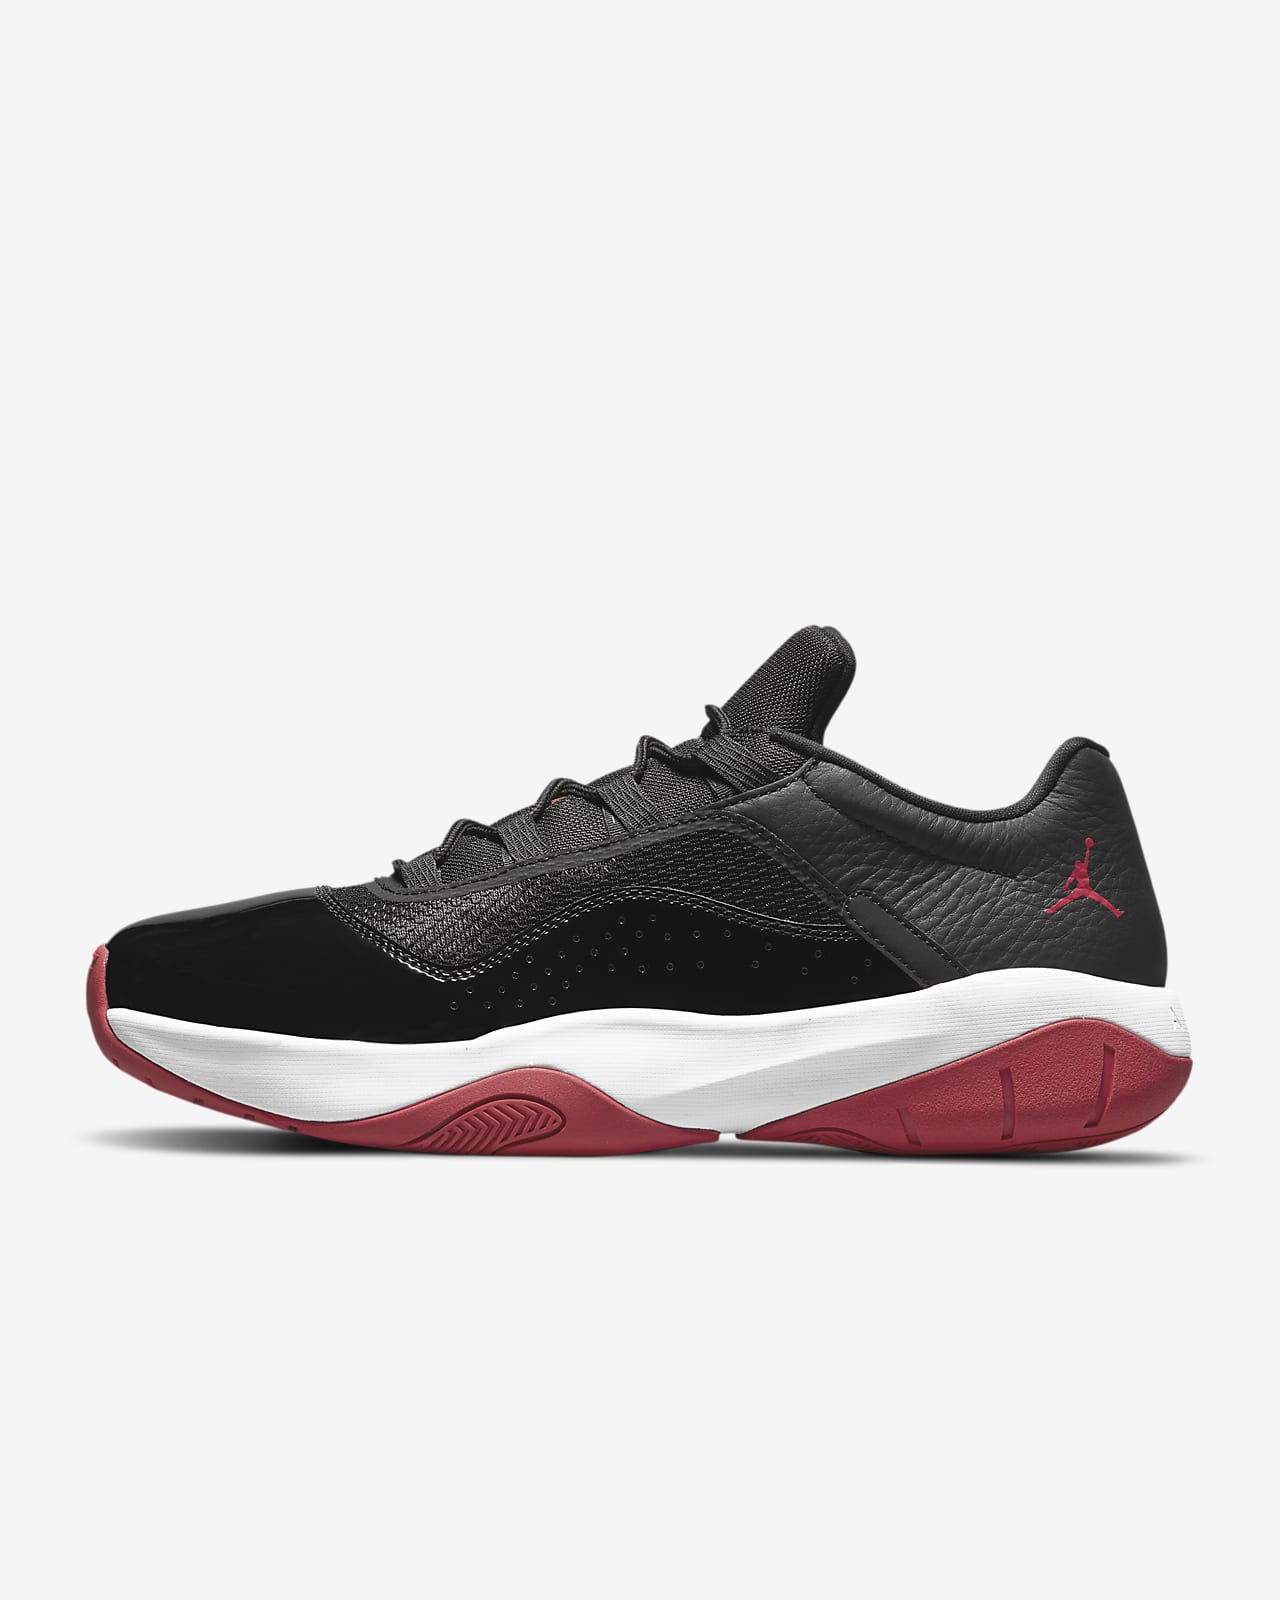 Air Jordan 11 CMFT Low Men's Shoes. Nike RO